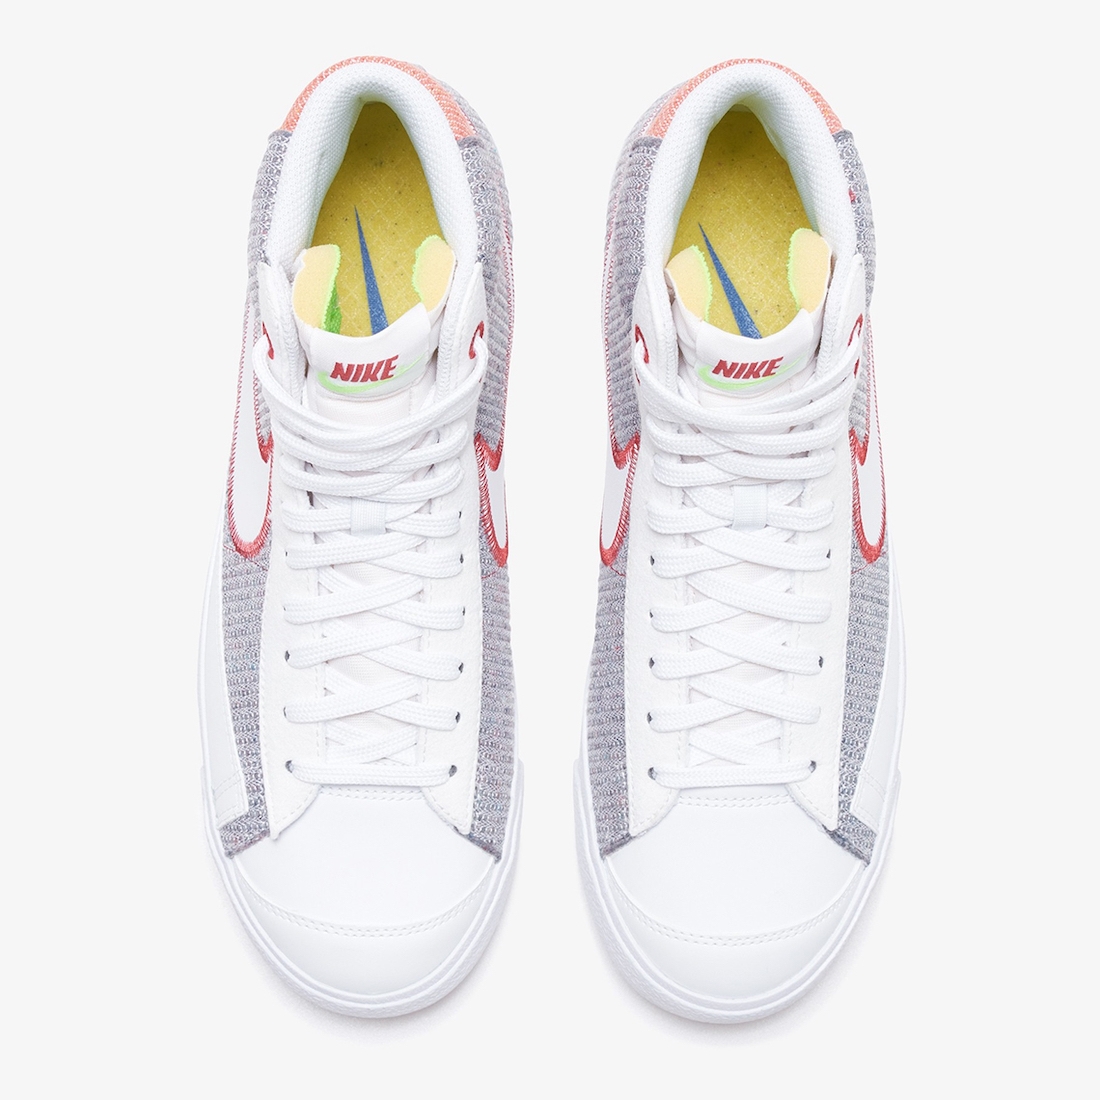 Pánské bílé šedé tenisky Nike Blazer Mid 77 Grey/White/Sport Red-Electric Green CW5838-022 vysoké kotníkové boty a obuv Nike